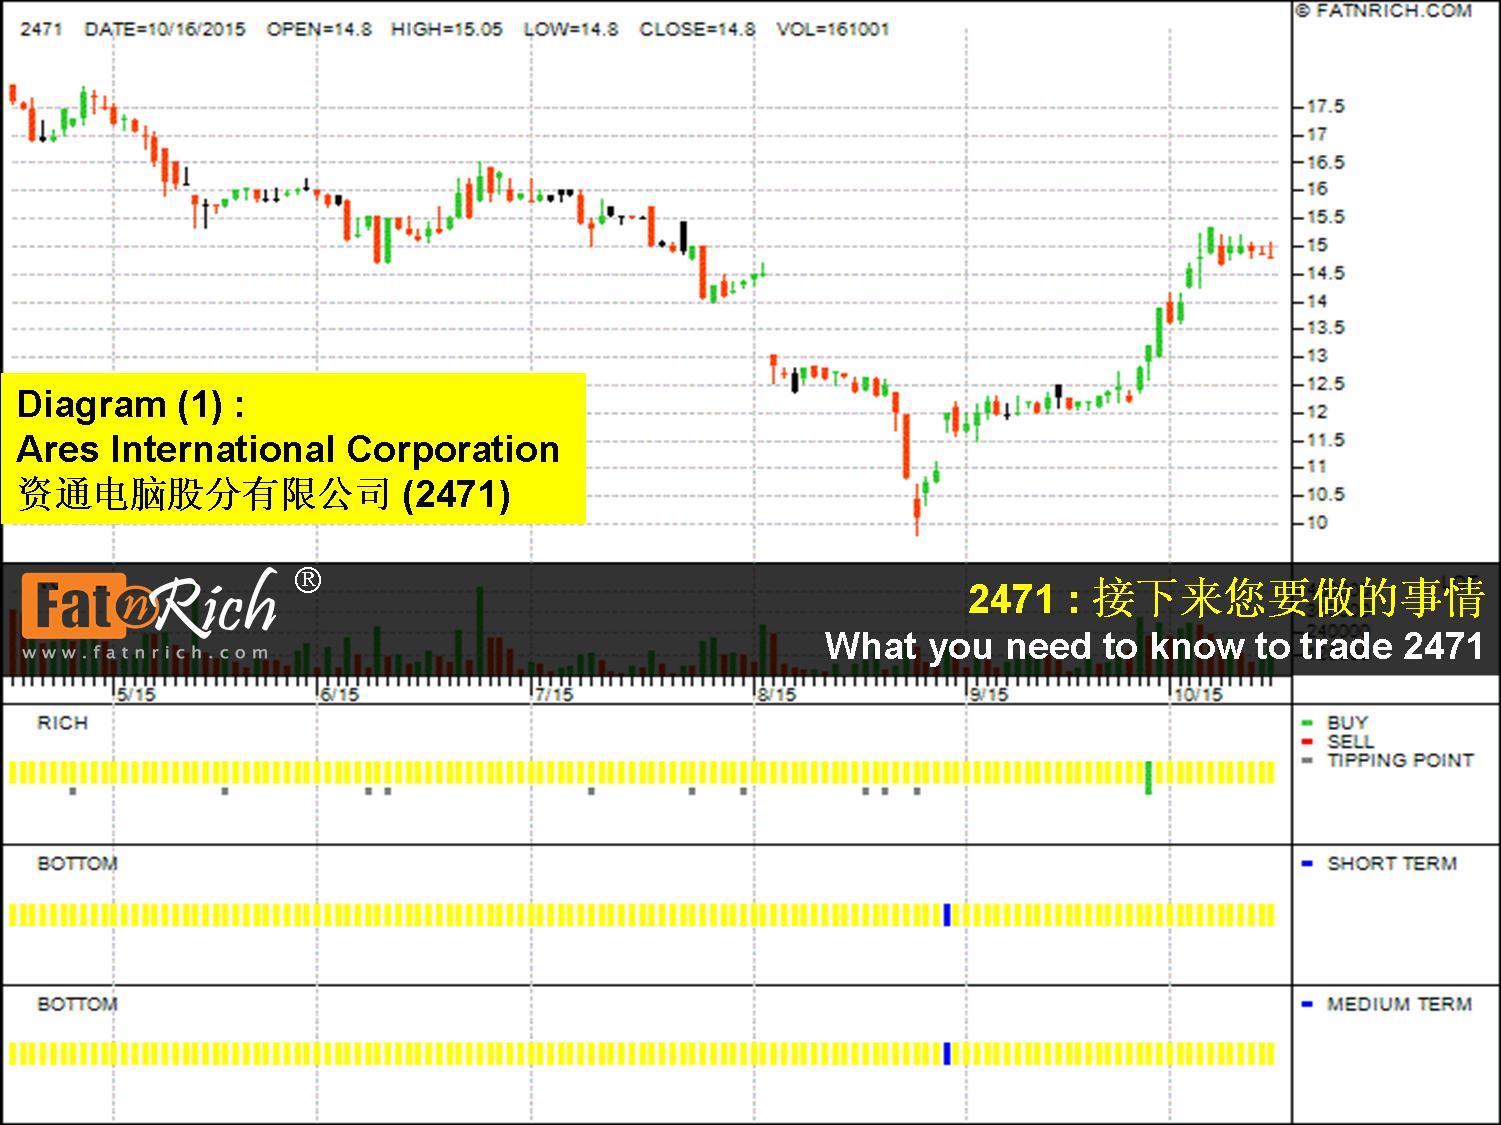 Taiwan stocks Ares International Corporation 2471